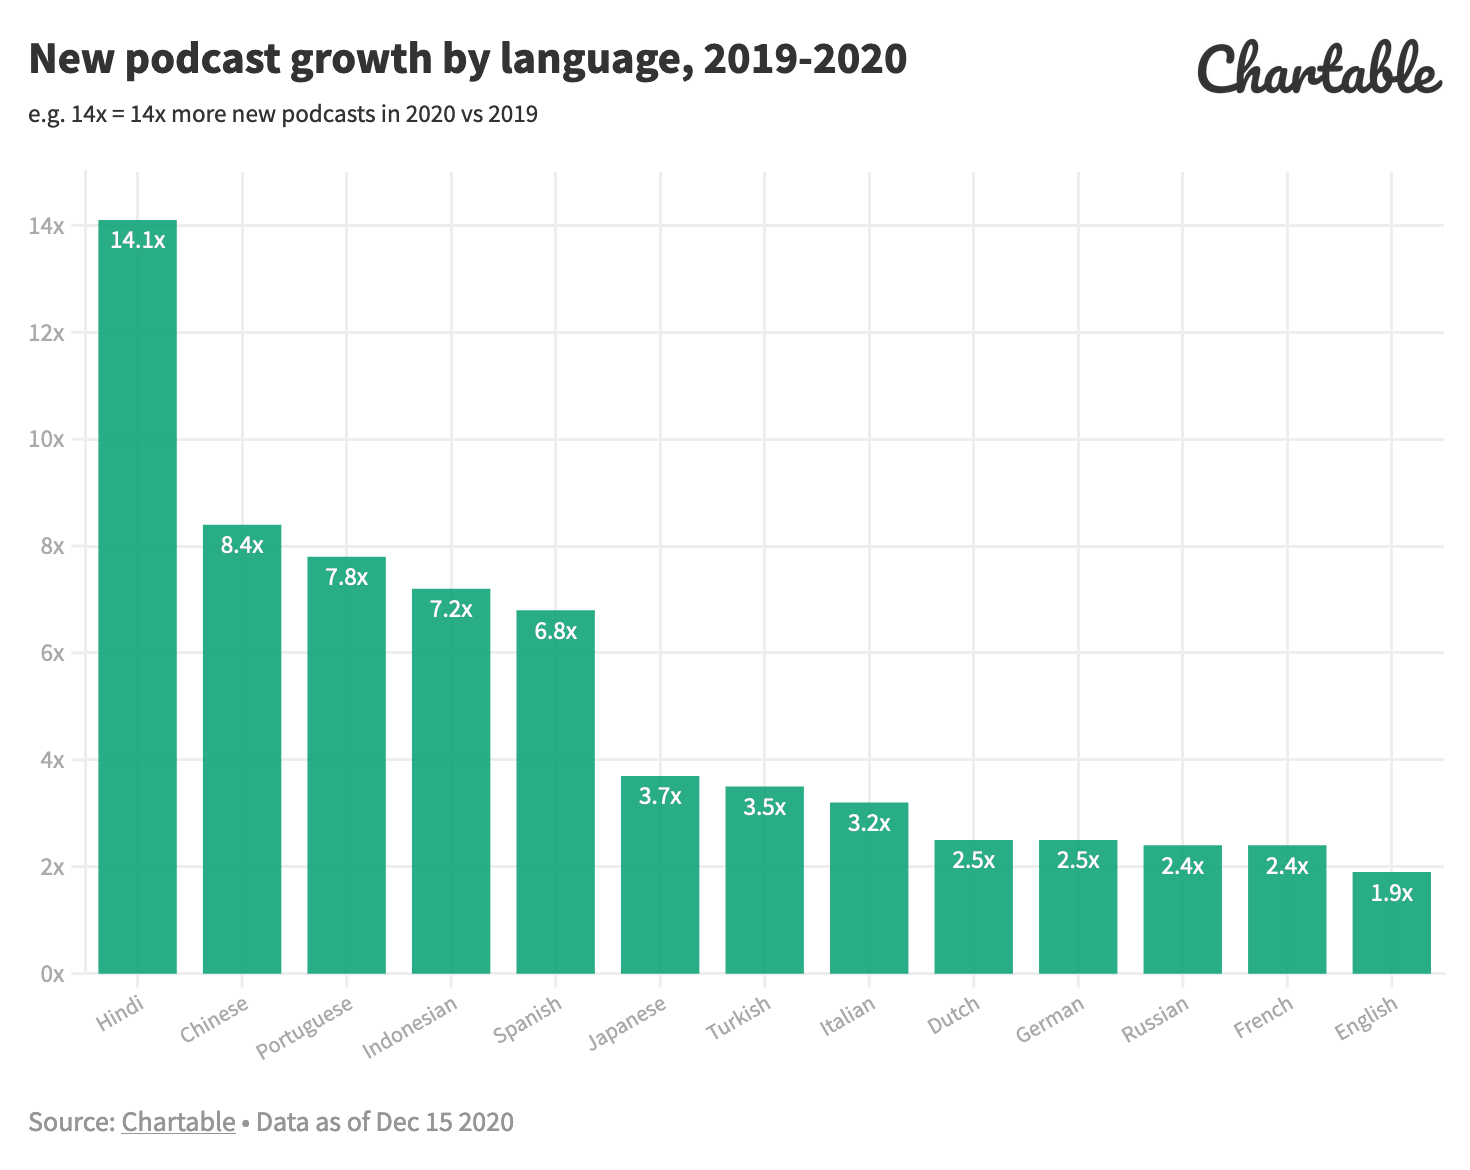 Près de 2 podcasts par minute en 2020